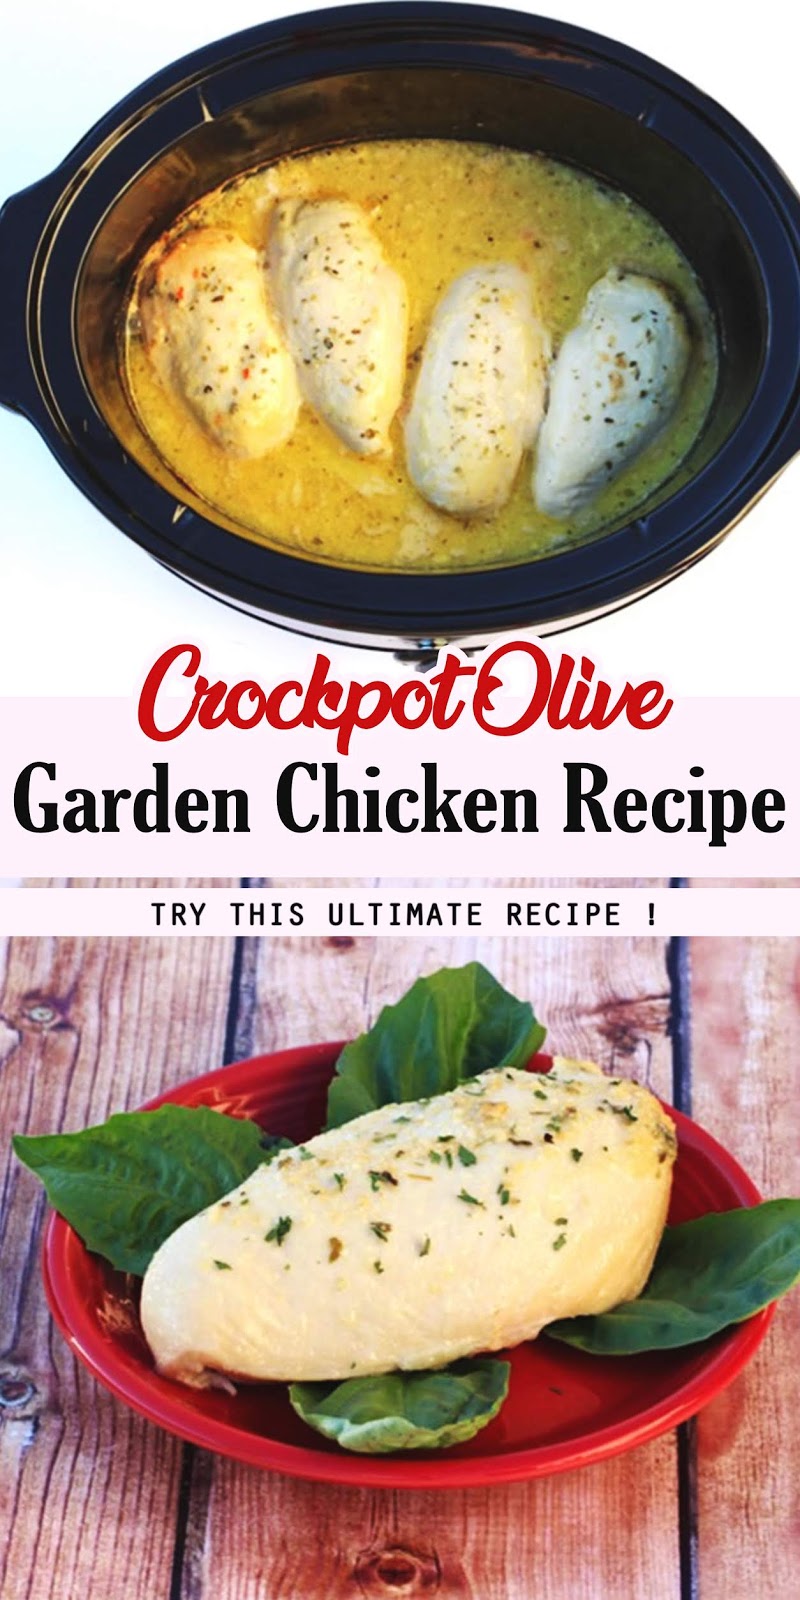 Crockpot Olive Garden Chicken Recipe - 3 SECONDS